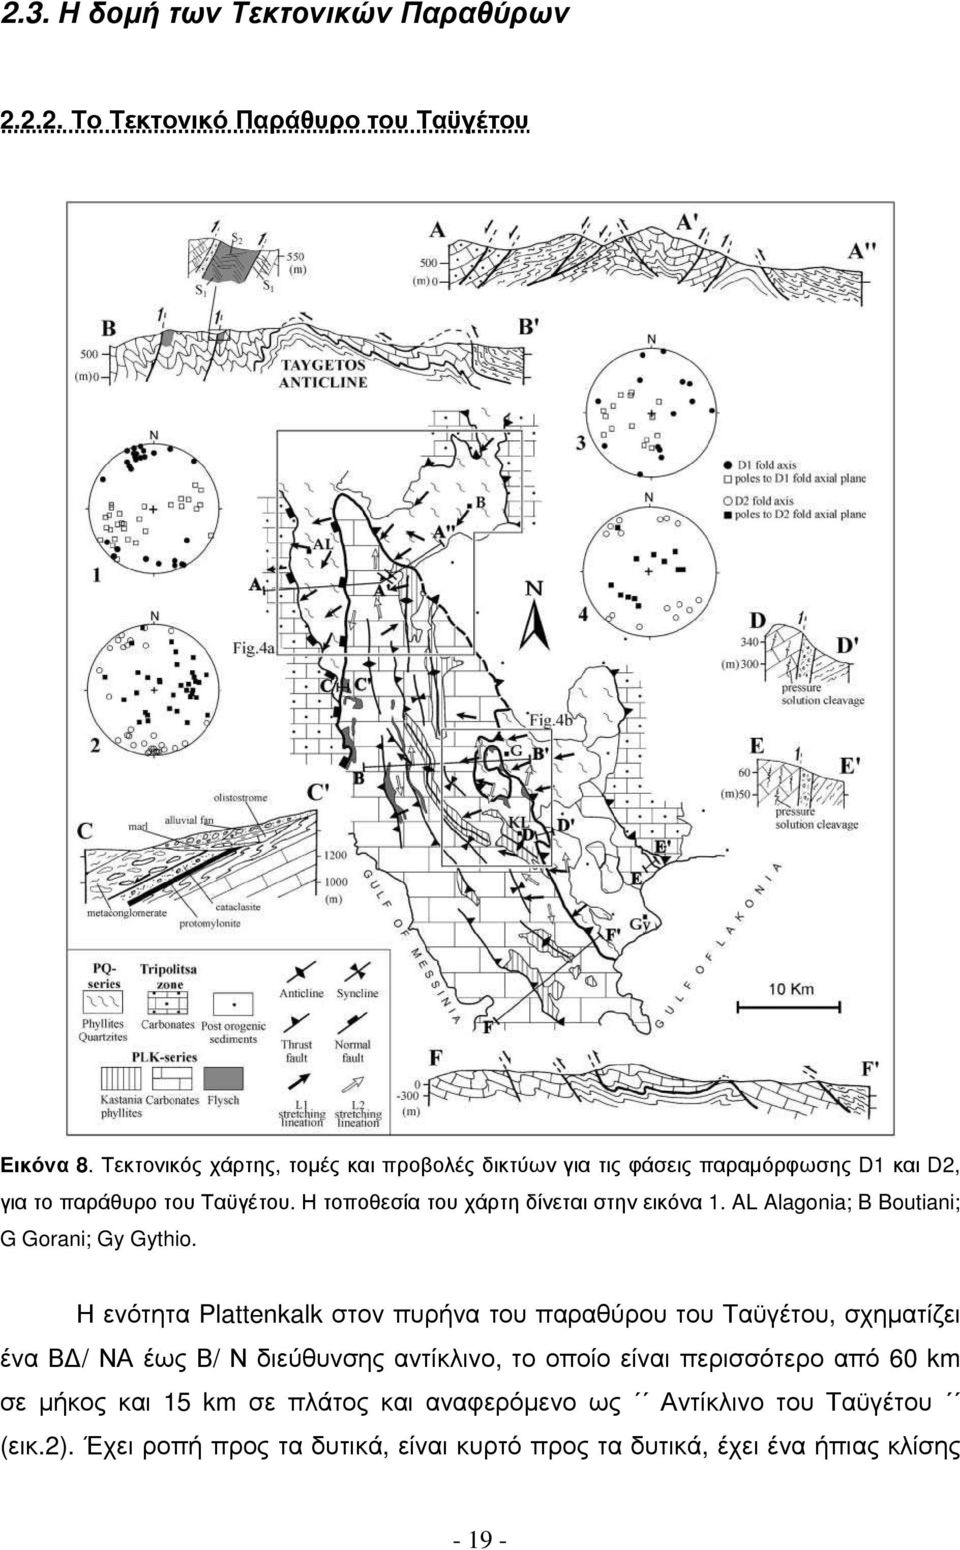 Η τοποθεσία του χάρτη δίνεται στην εικόνα 1. AL Alagonia; B Boutiani; G Gorani; Gy Gythio.